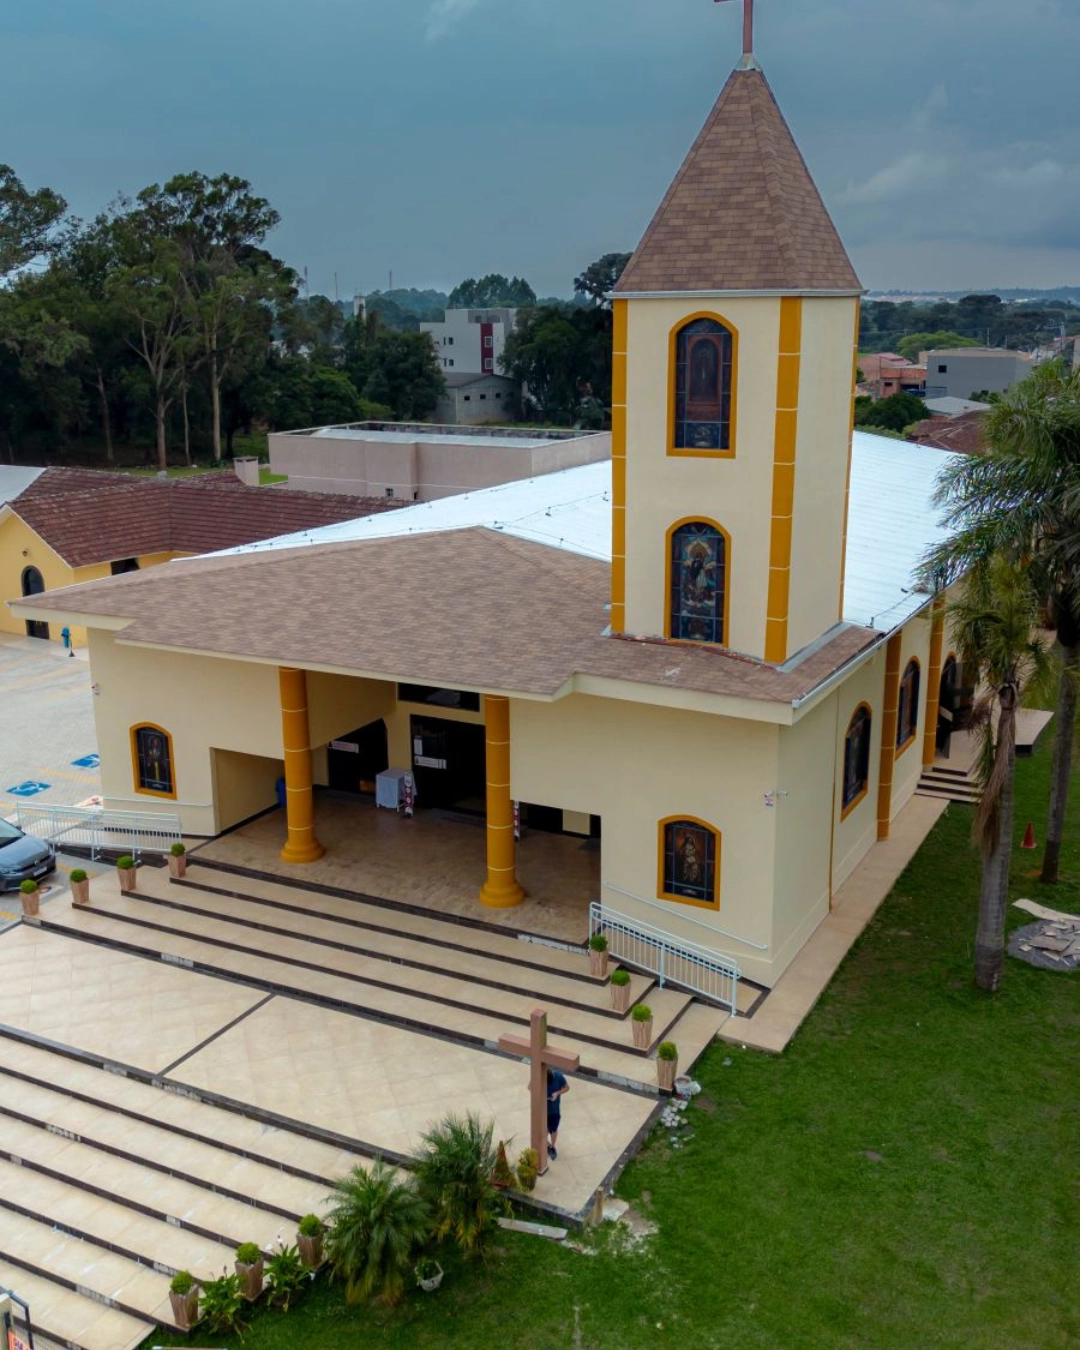 Imagem de destaque - Paróquia Senhor Bom Jesus promove macarronada em louvor à Santa Rita neste sábado (11)